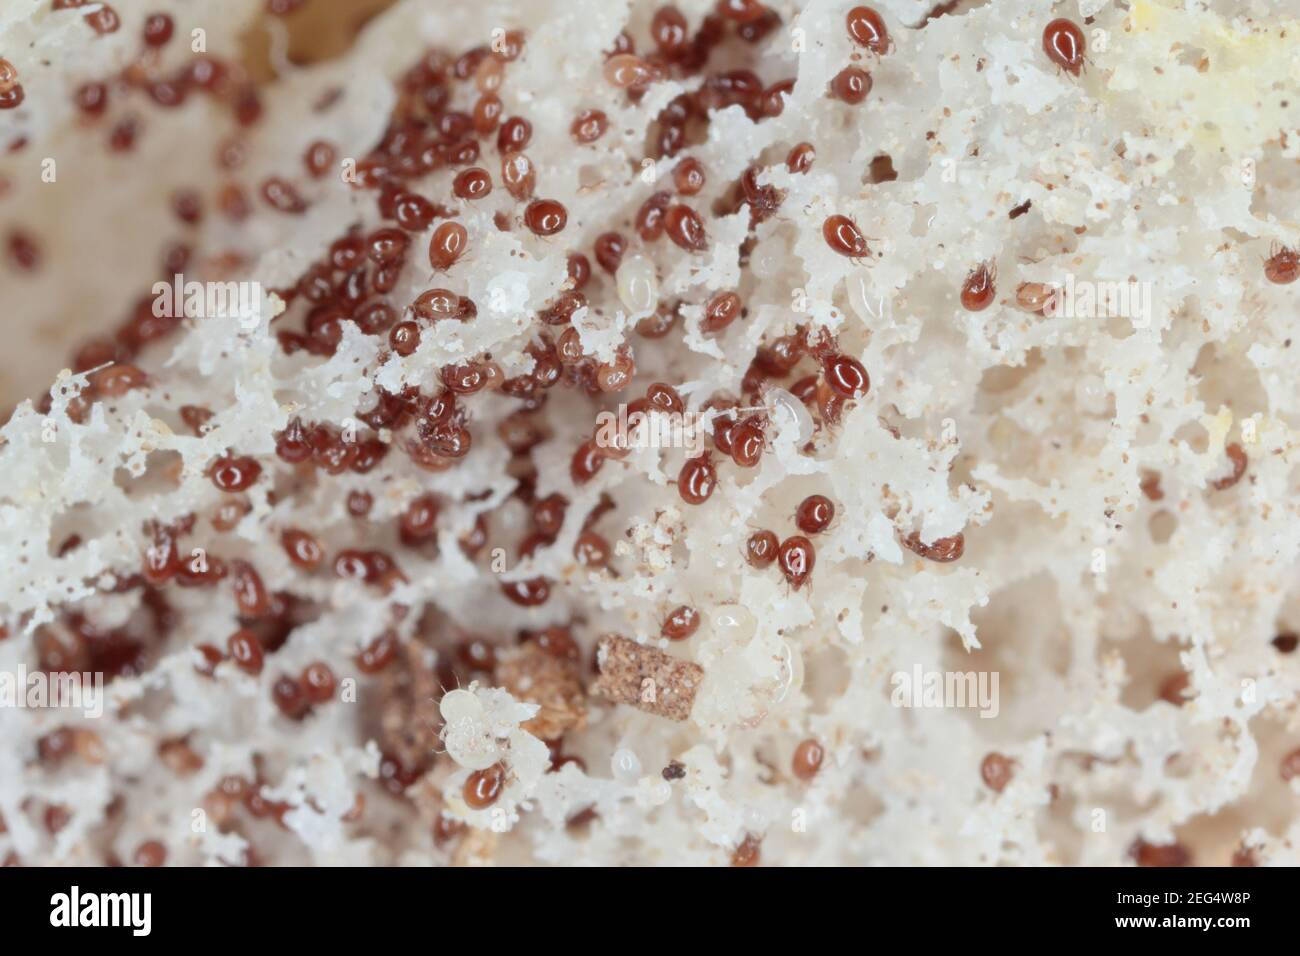 Vergrößerung von Milben aus Acaridae Familie auf schimmeligen Brot sind Häufige Schädlinge in der Lagerung von Lebensmitteln Stockfoto